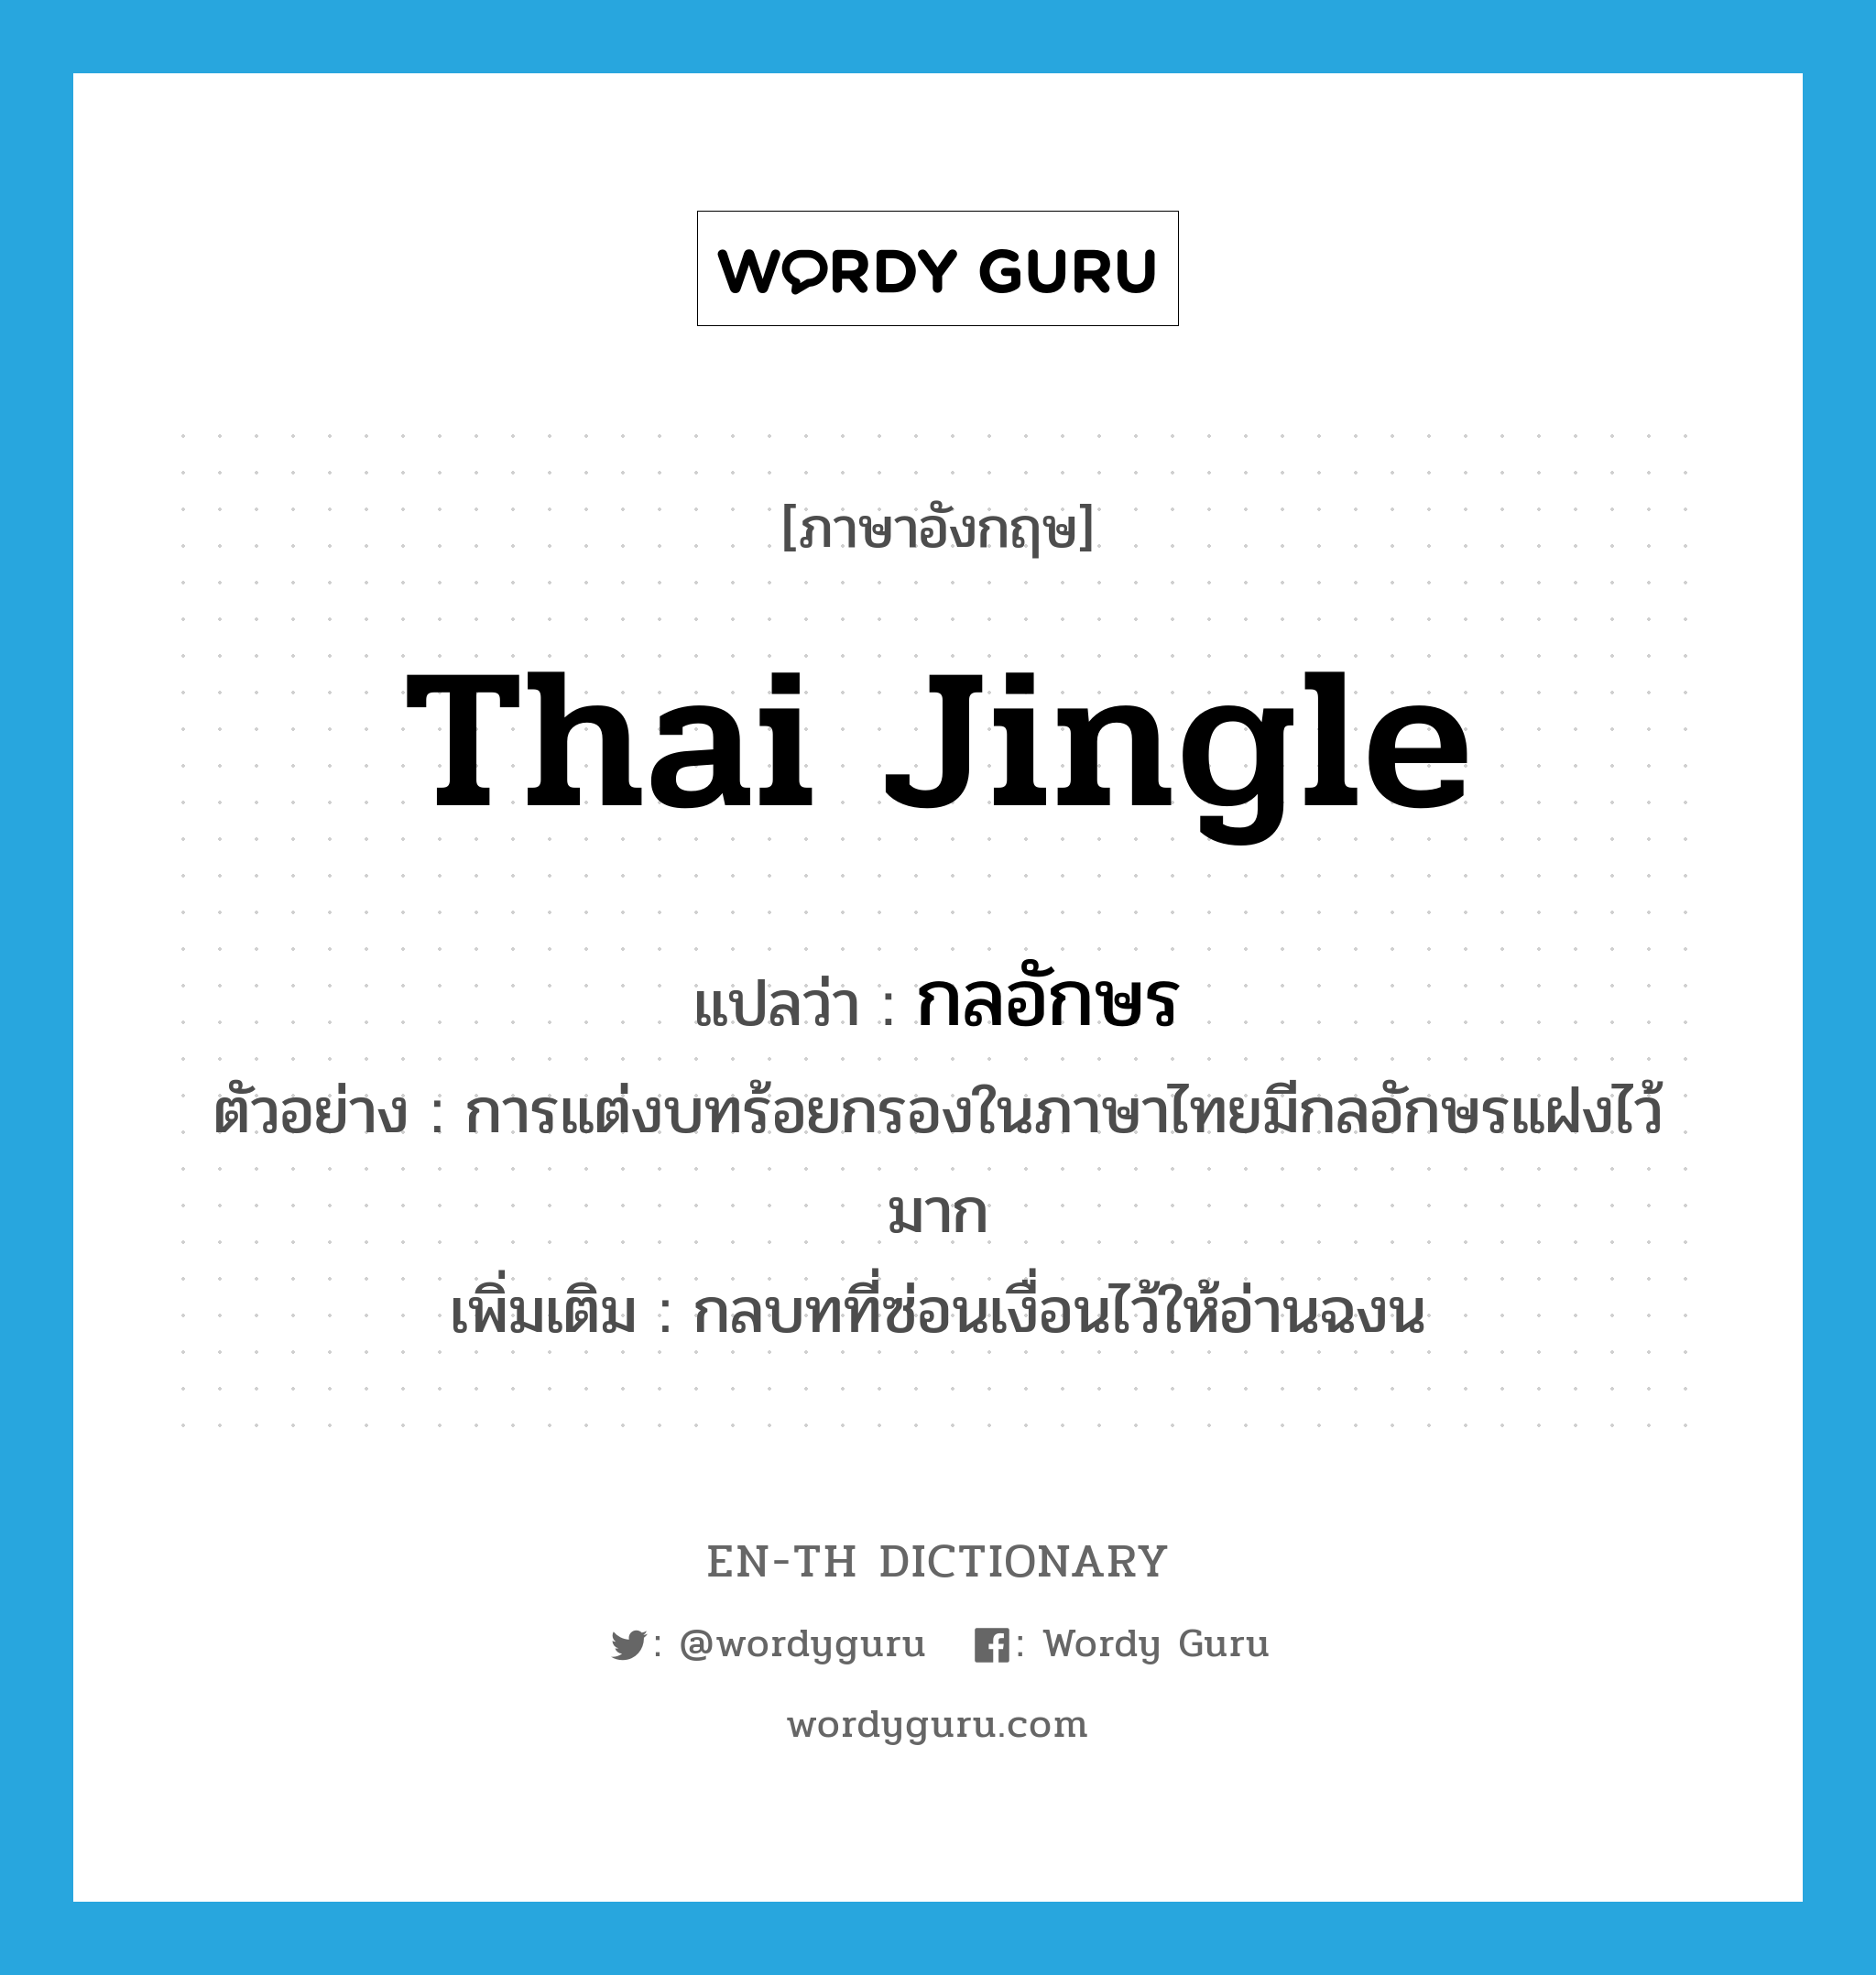 Thai jingle แปลว่า?, คำศัพท์ภาษาอังกฤษ Thai jingle แปลว่า กลอักษร ประเภท N ตัวอย่าง การแต่งบทร้อยกรองในภาษาไทยมีกลอักษรแฝงไว้มาก เพิ่มเติม กลบทที่ซ่อนเงื่อนไว้ให้อ่านฉงน หมวด N